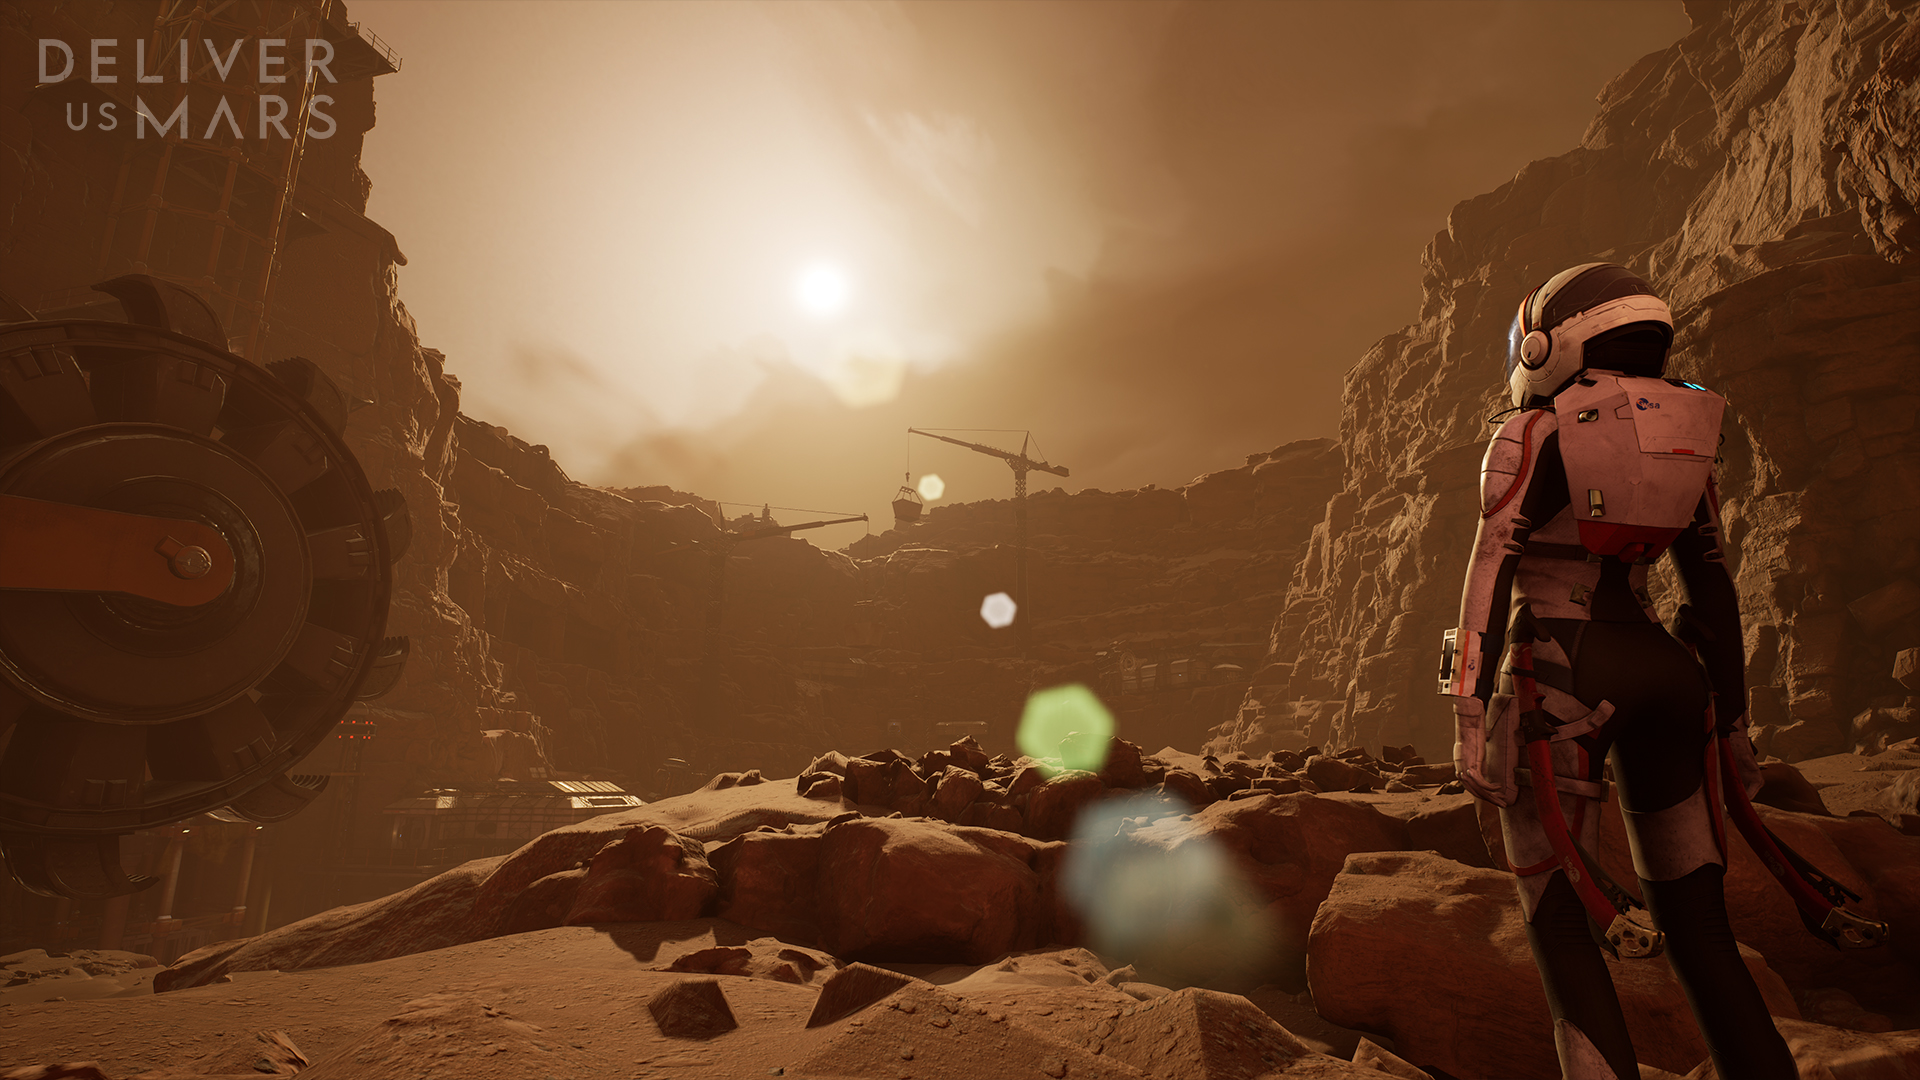 Wyrusz w podróż życia w grze Deliver Us Mars, dostępnej już dziś na Xbox Series X|S i Xbox One